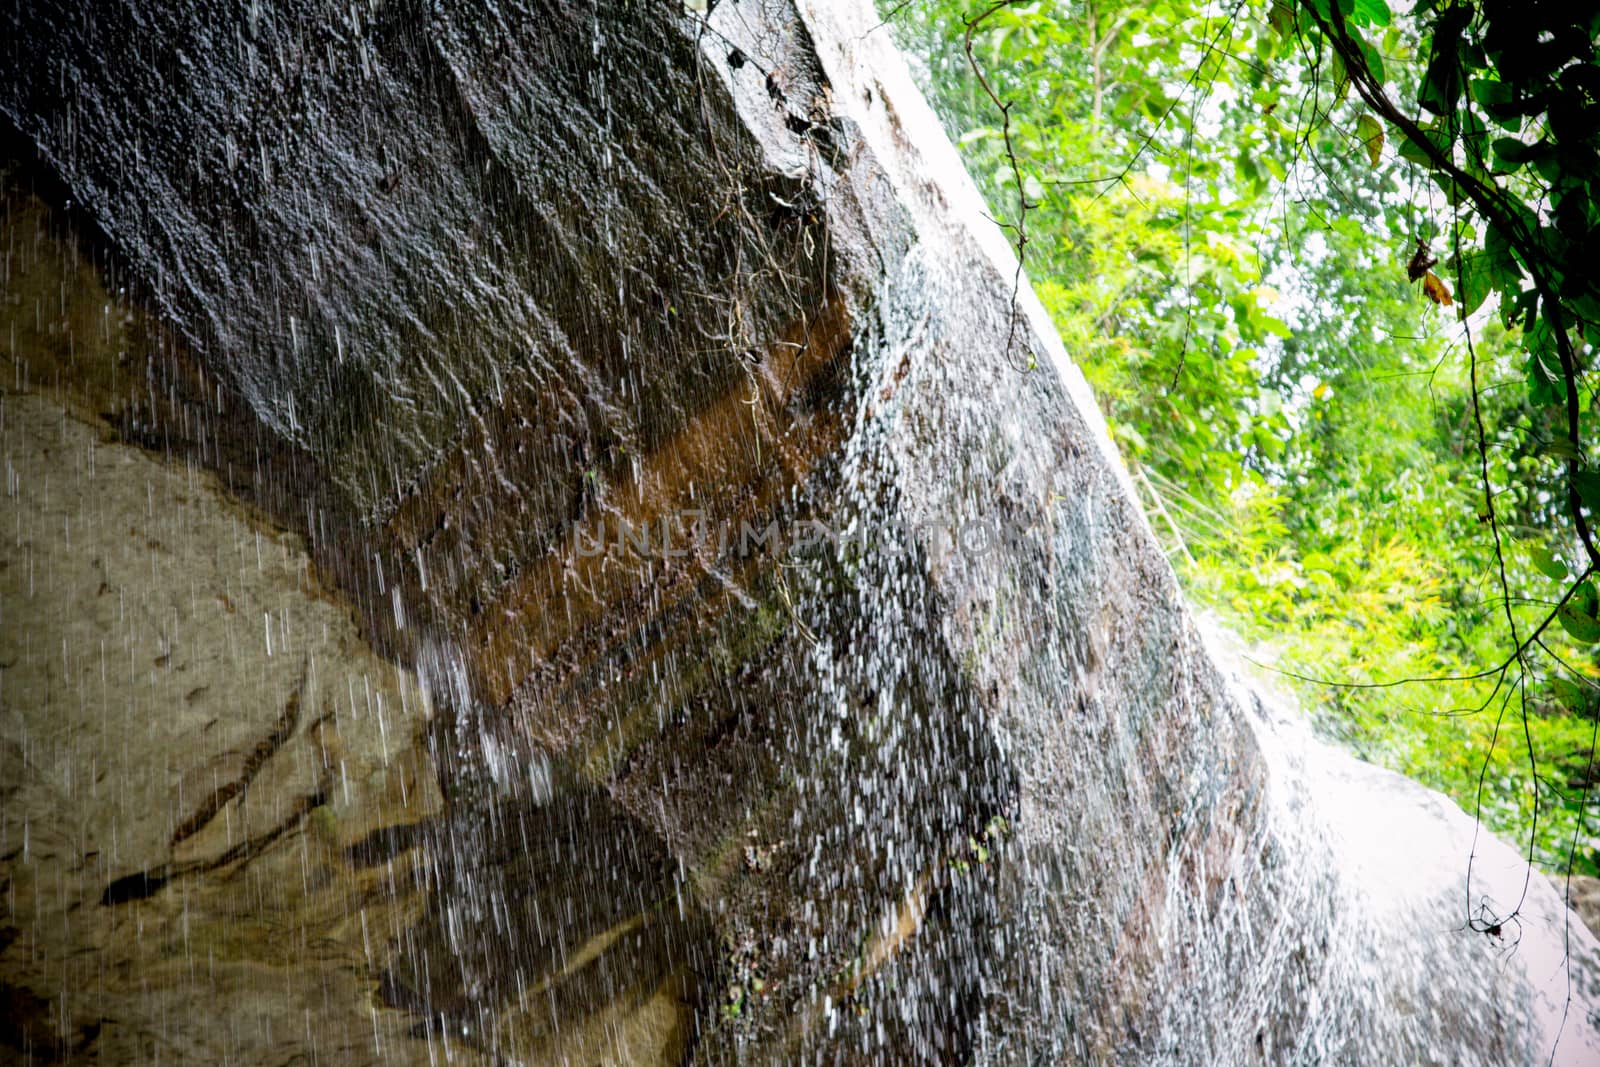 landscape waterfall on the rocks